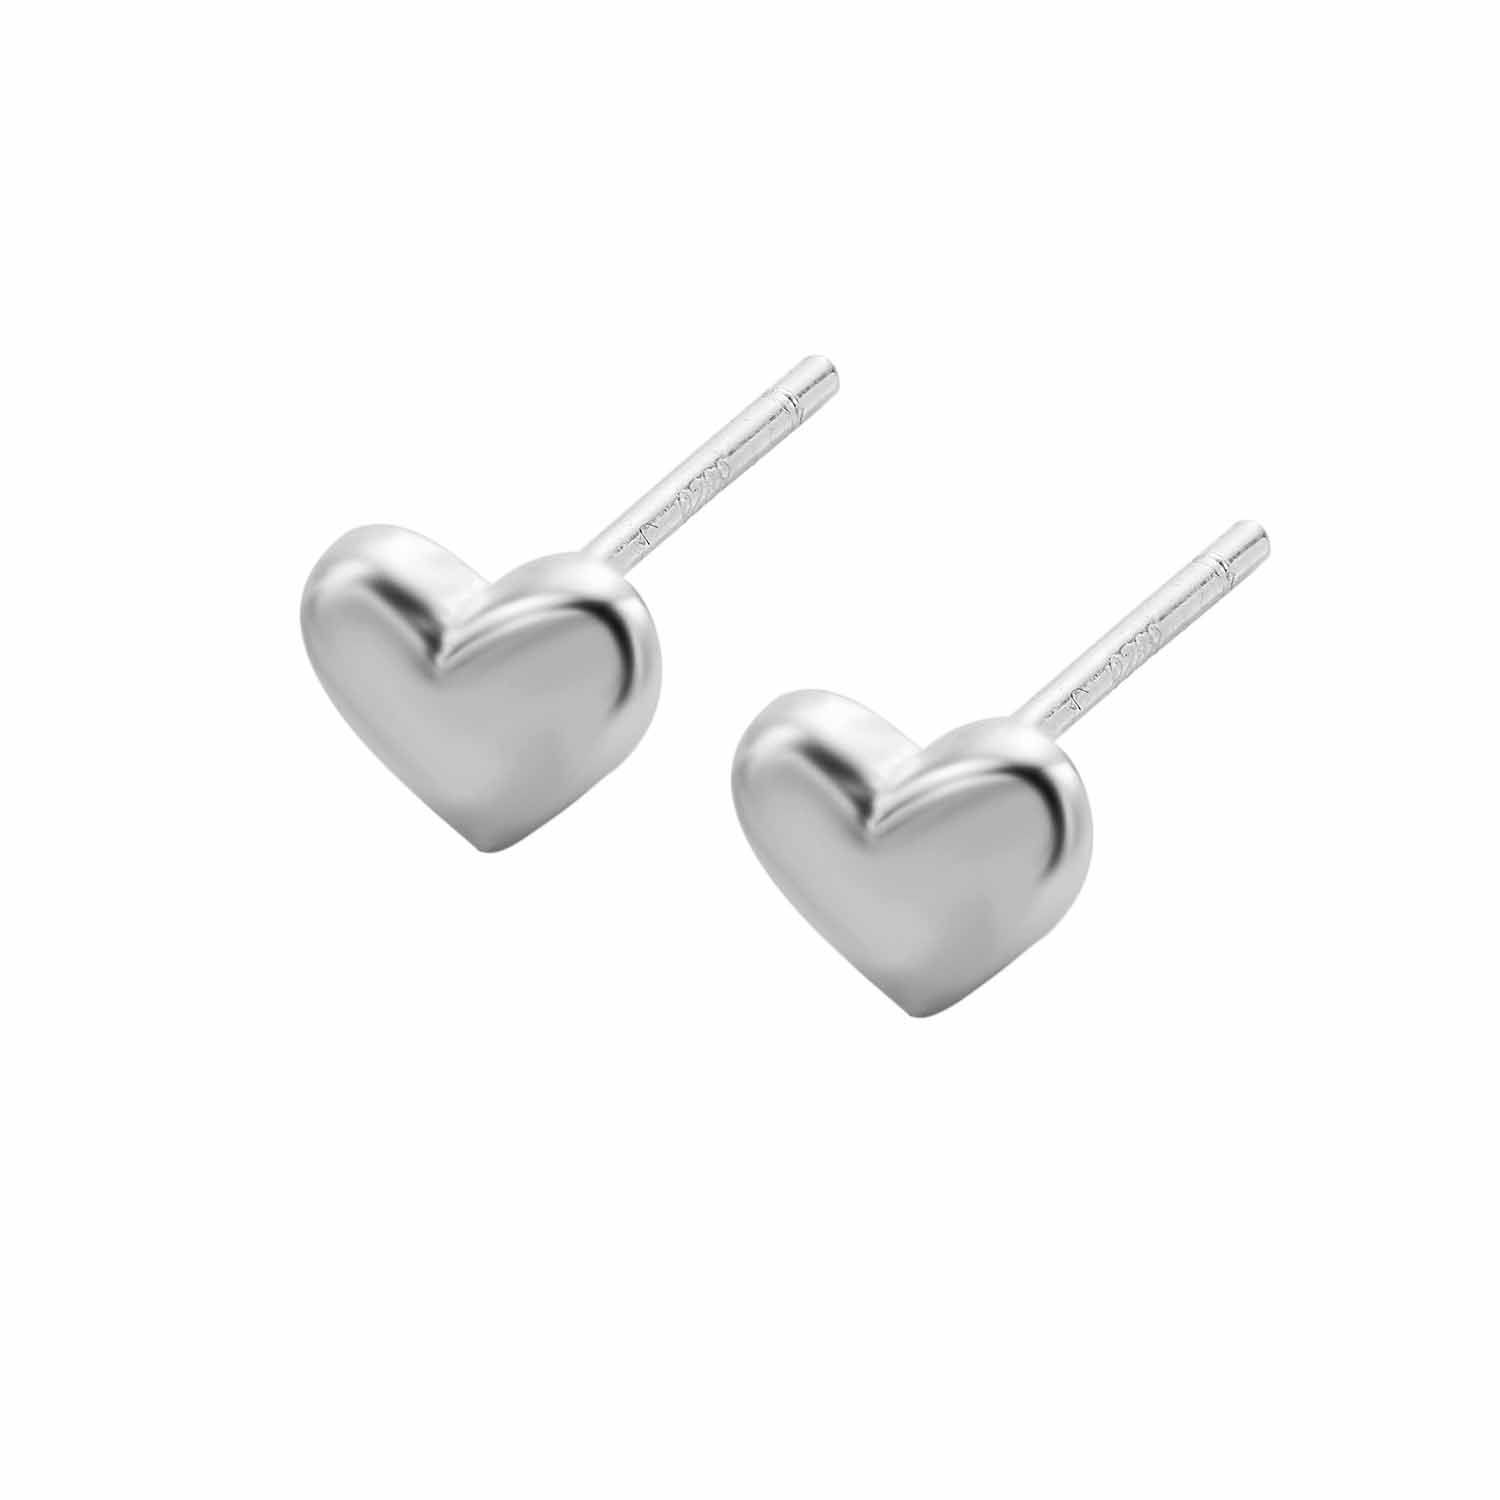 Heart Brozne Stud Earrings 925 Sterling Silver Heart Stud Earrings